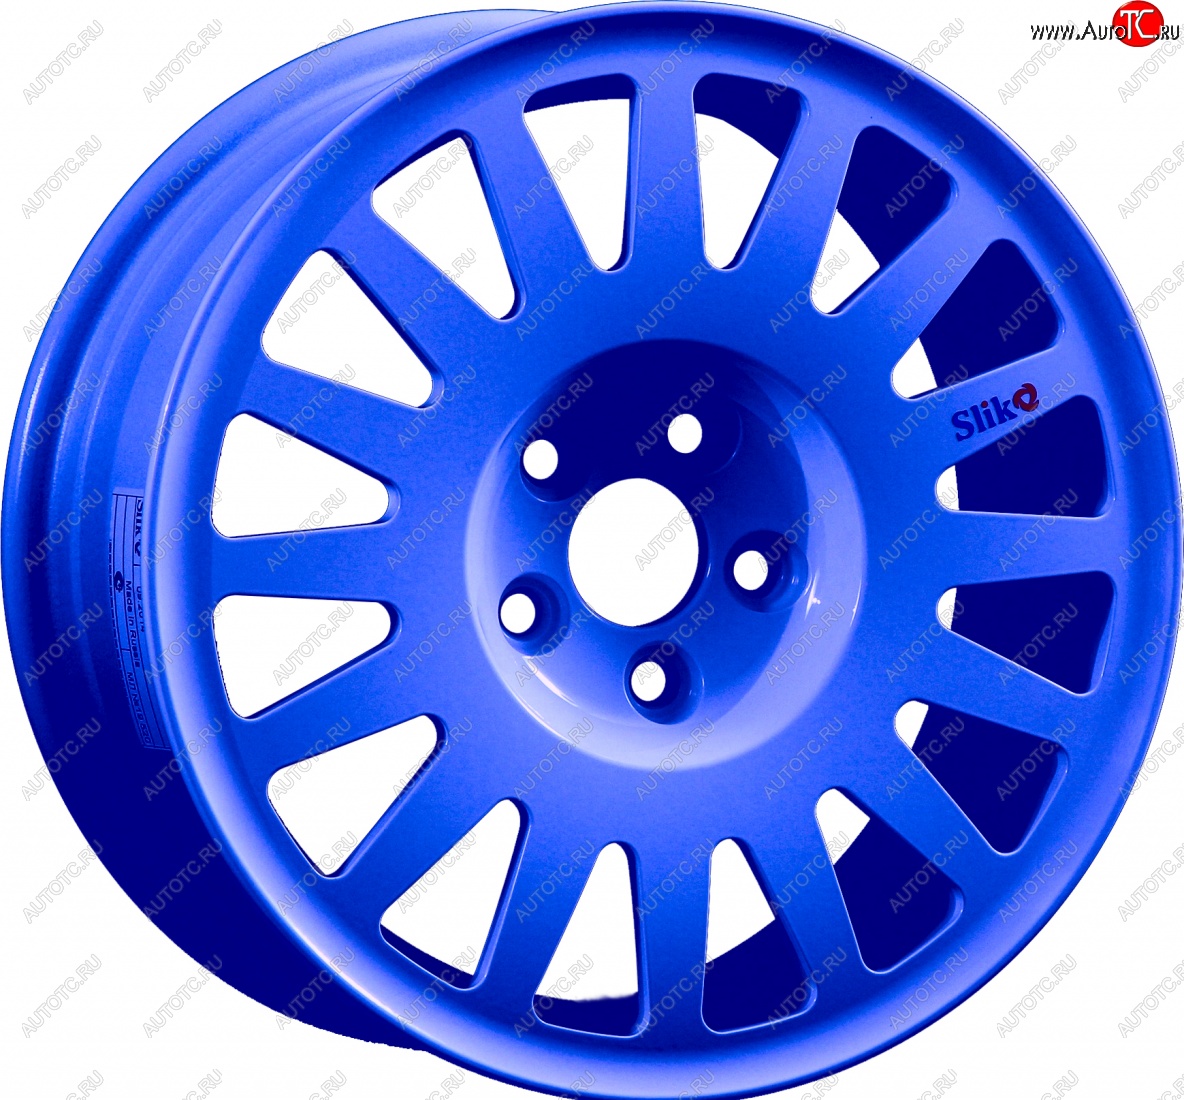 15 599 р. Кованый диск Slik Classic Sport L-1823S 6.5x15   (Синий (BLUE))